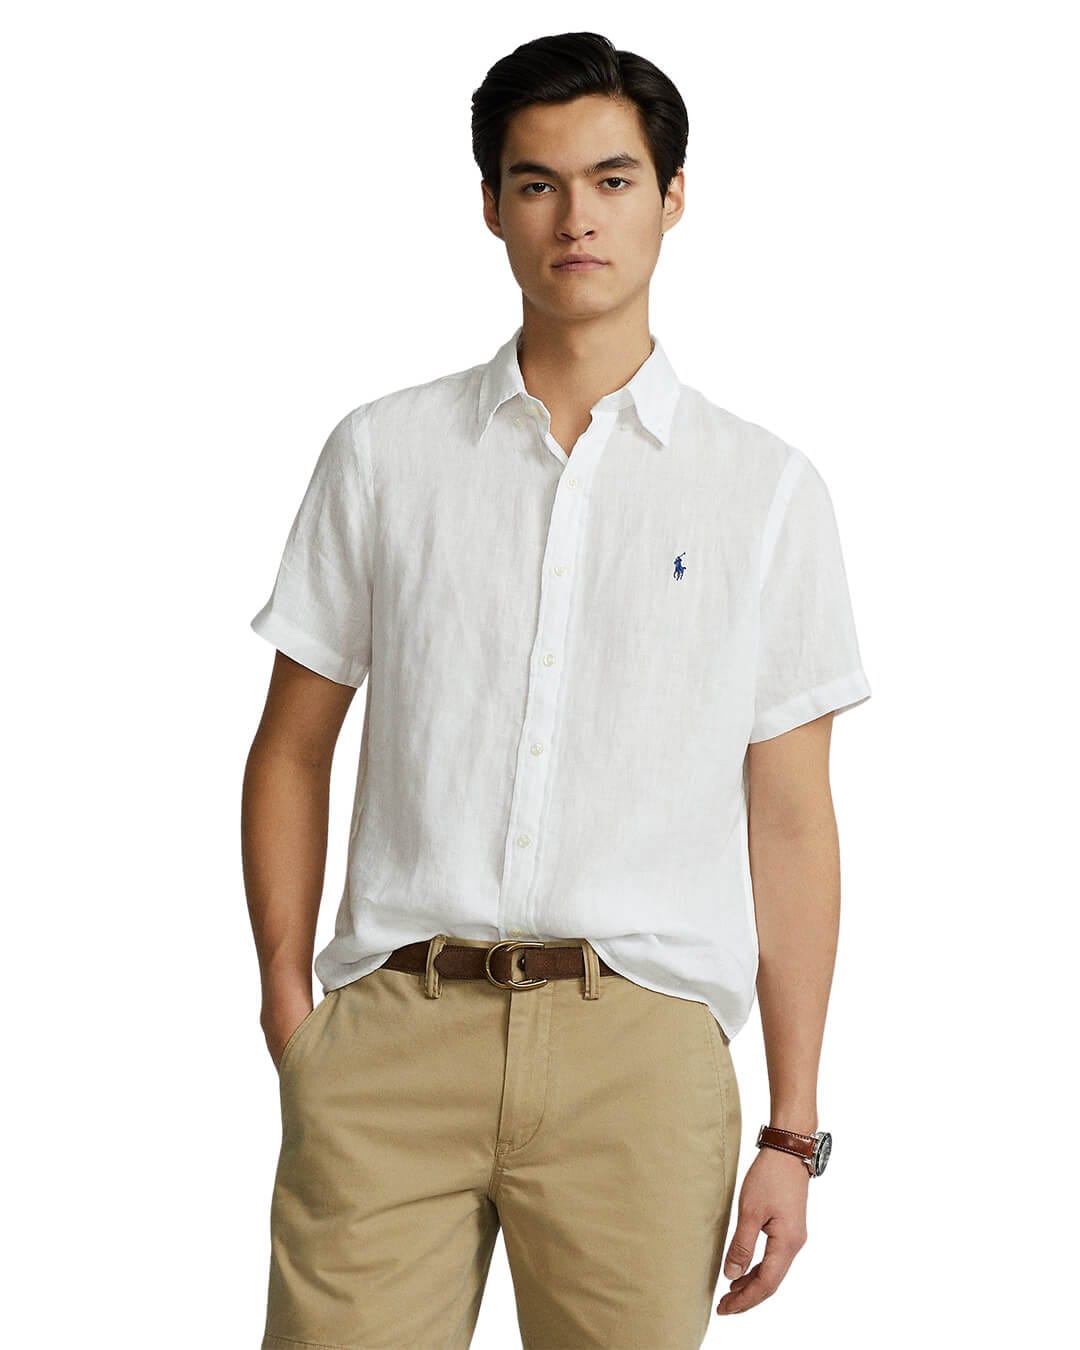 Polo Ralph Lauren Shirts Polo Ralph Lauren Linen White Shirt